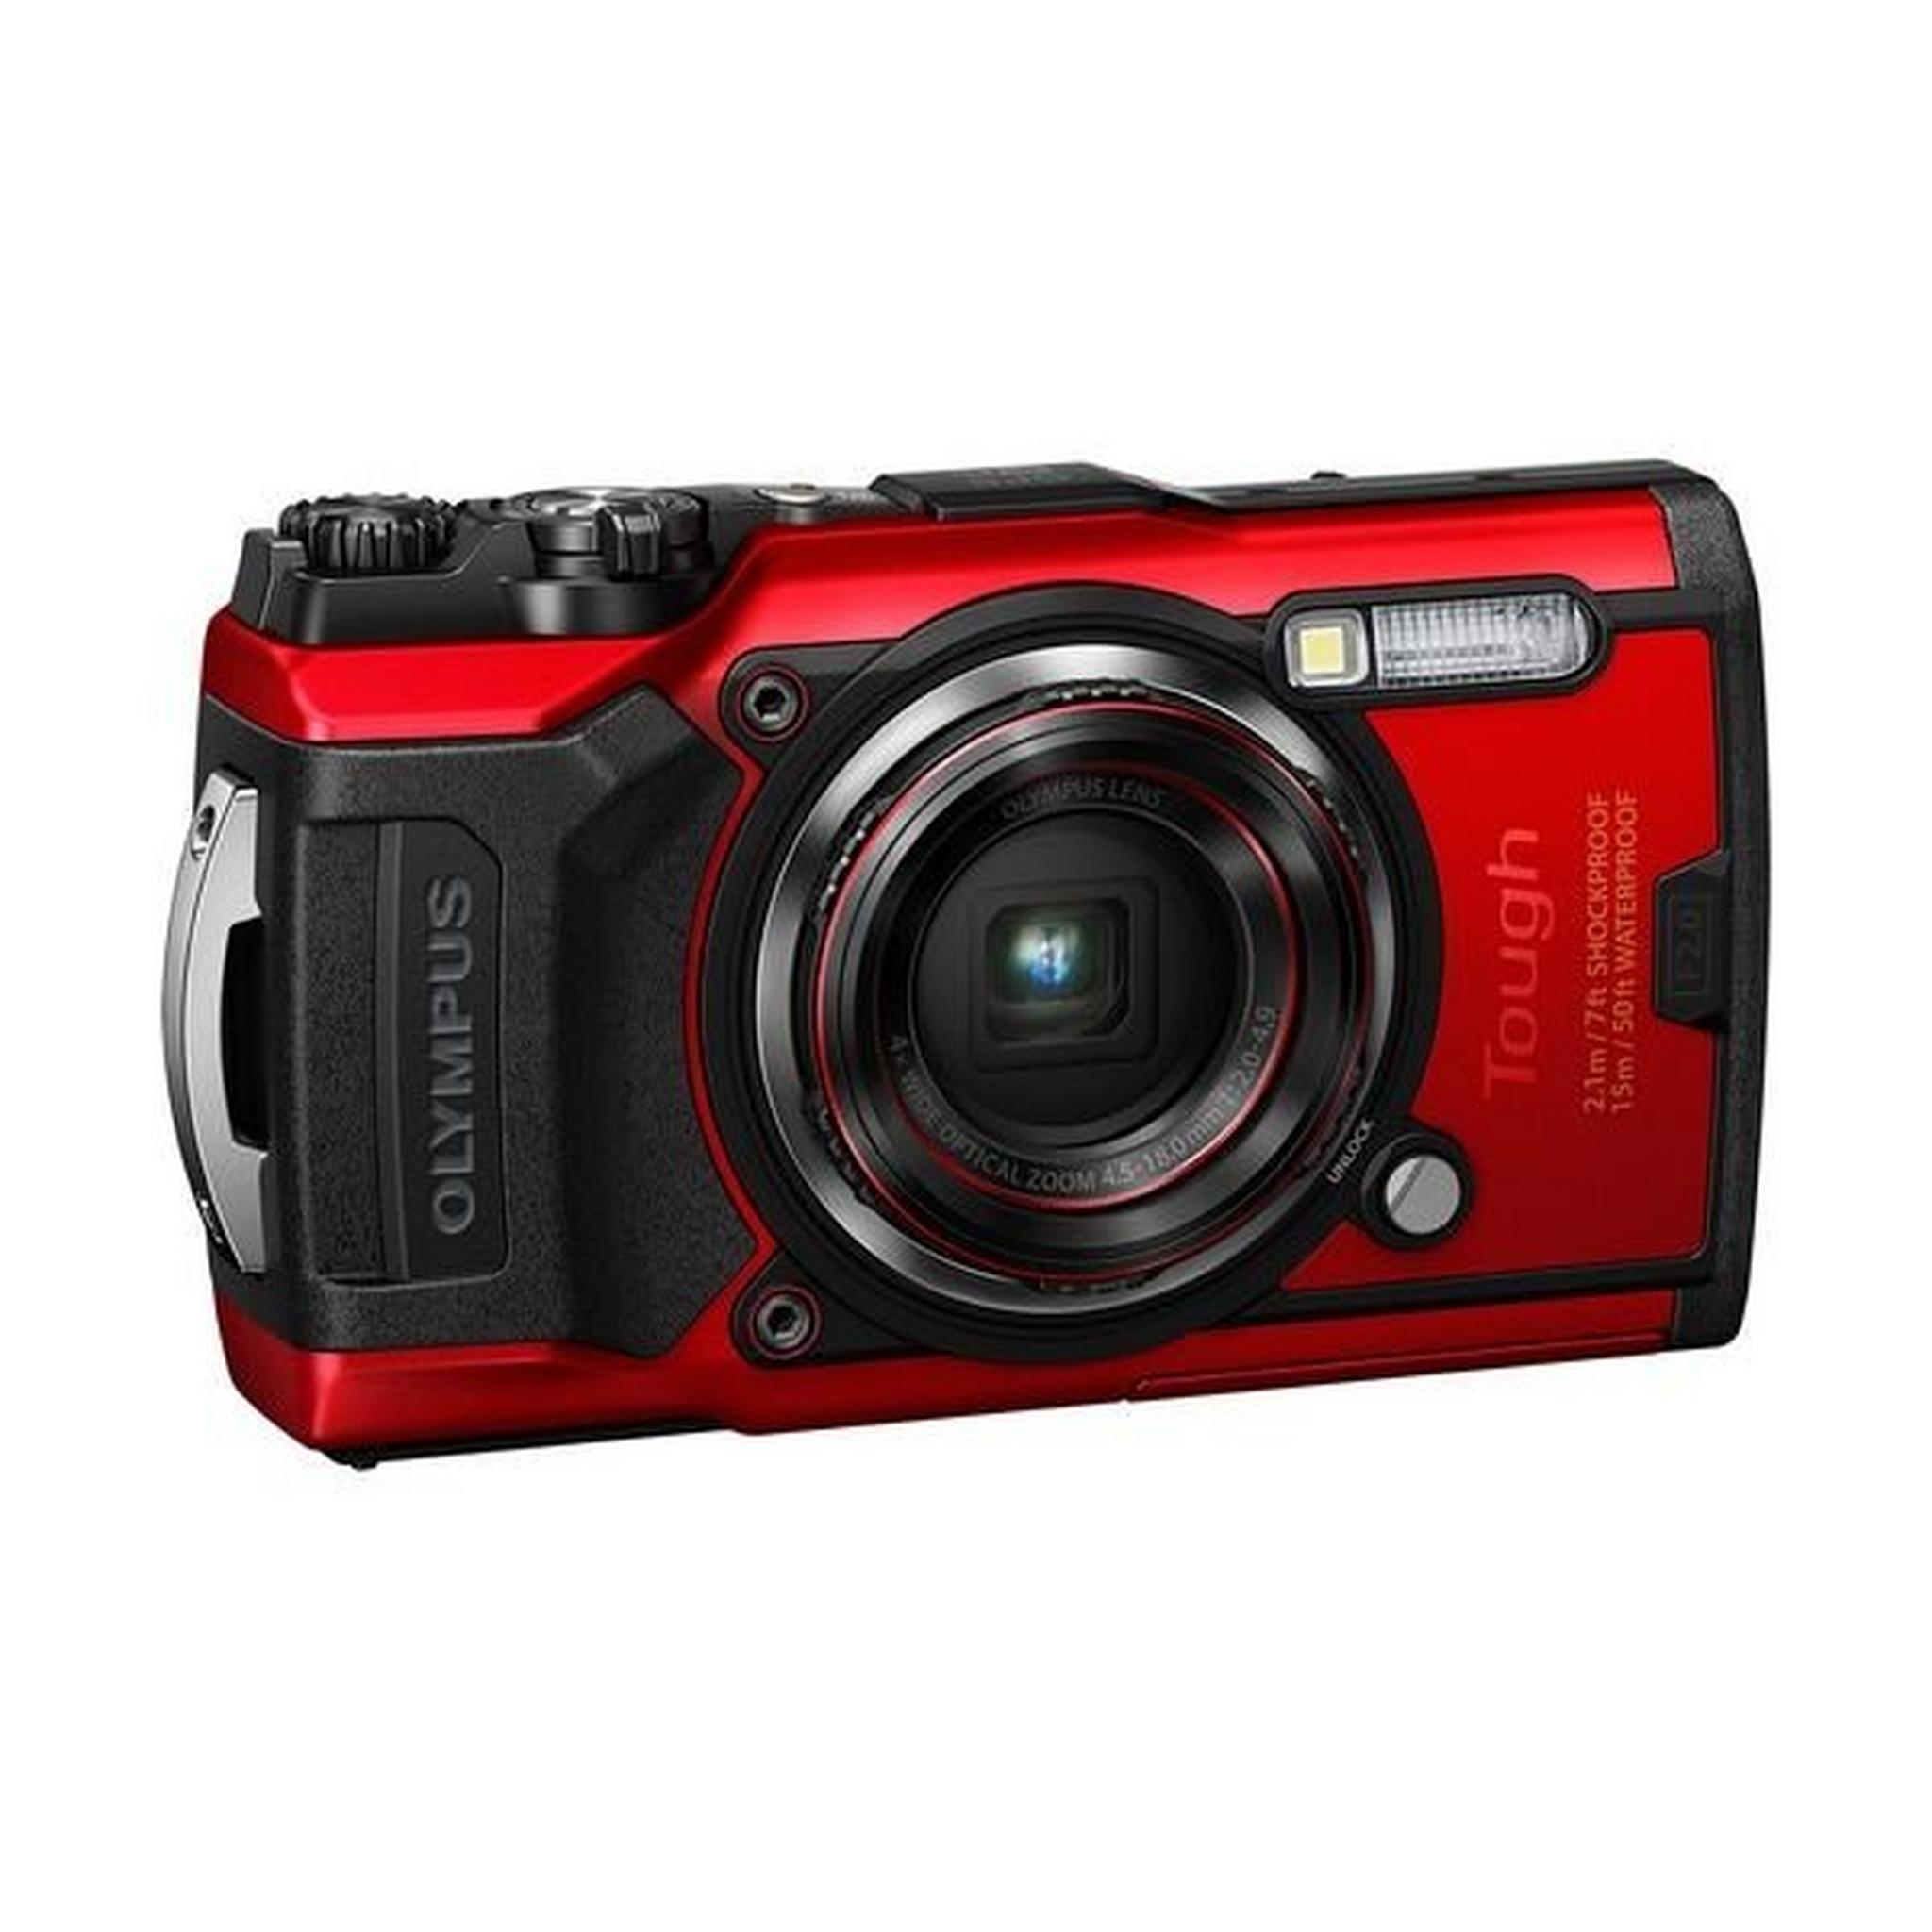 كاميرا رقمية بدقة 12 ميجابكسل من أوليمبوس توغ TG-6 – أحمر